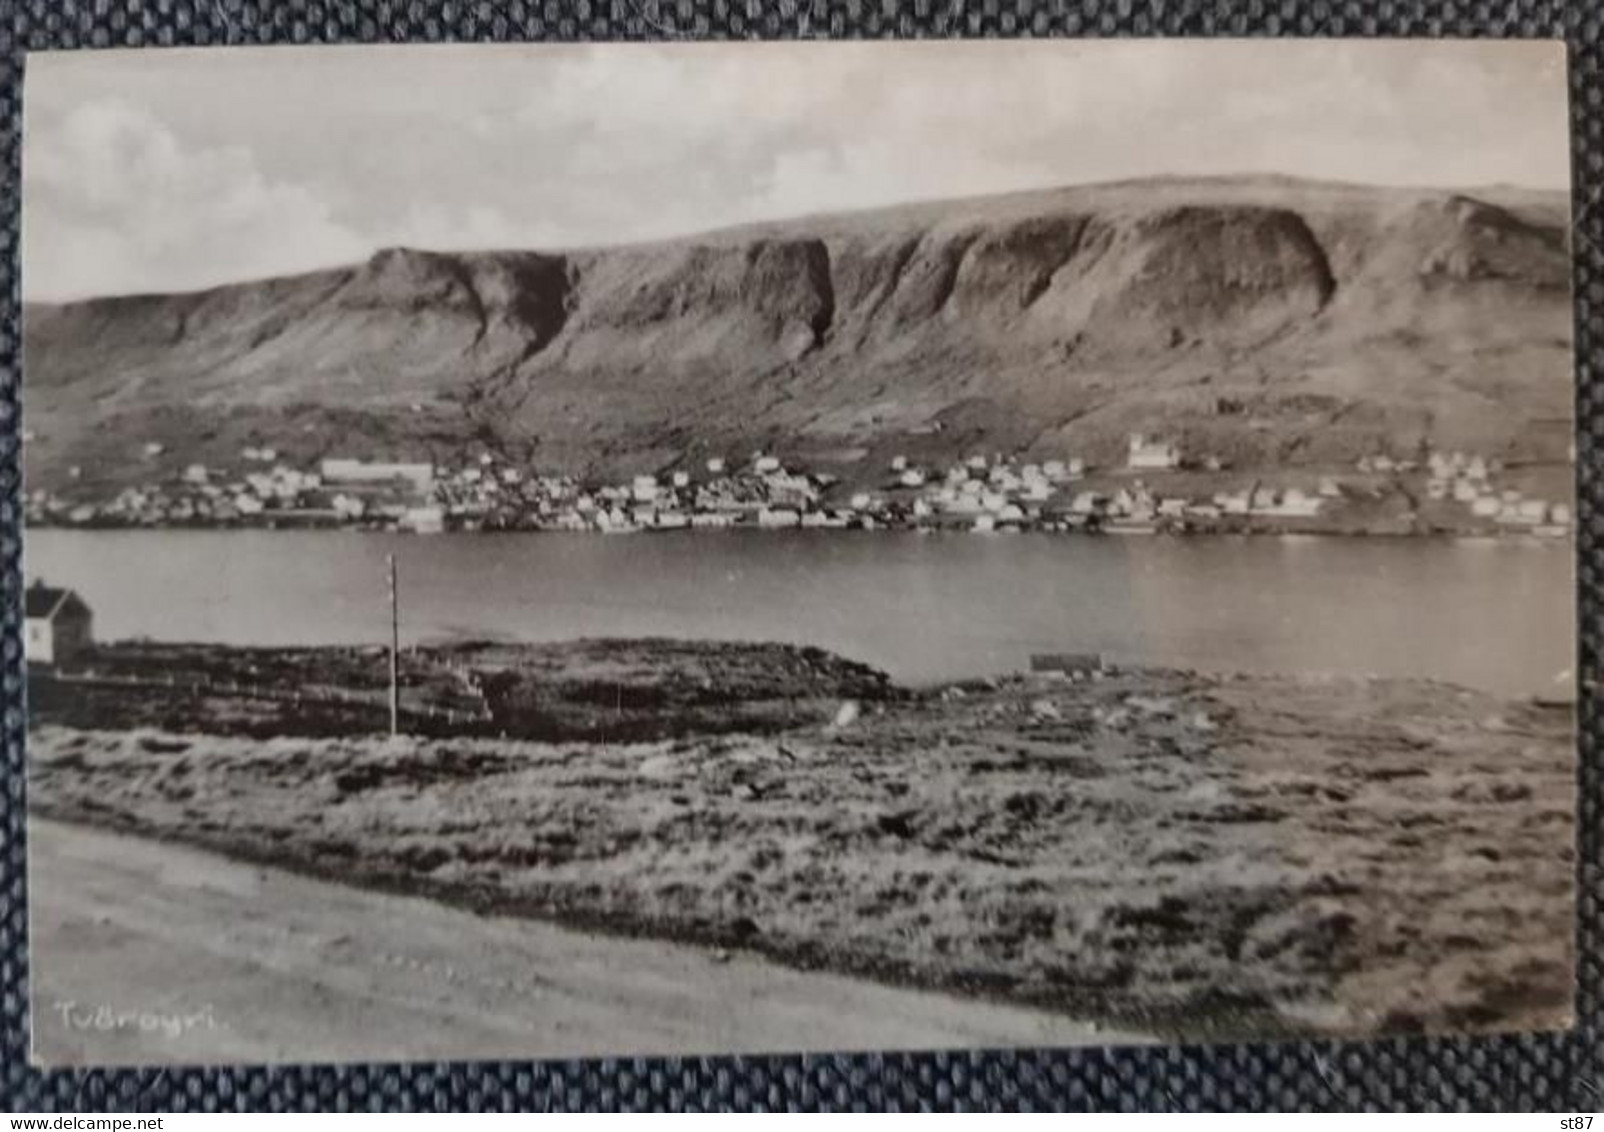 Faroe Tvöroyri - Faeröer